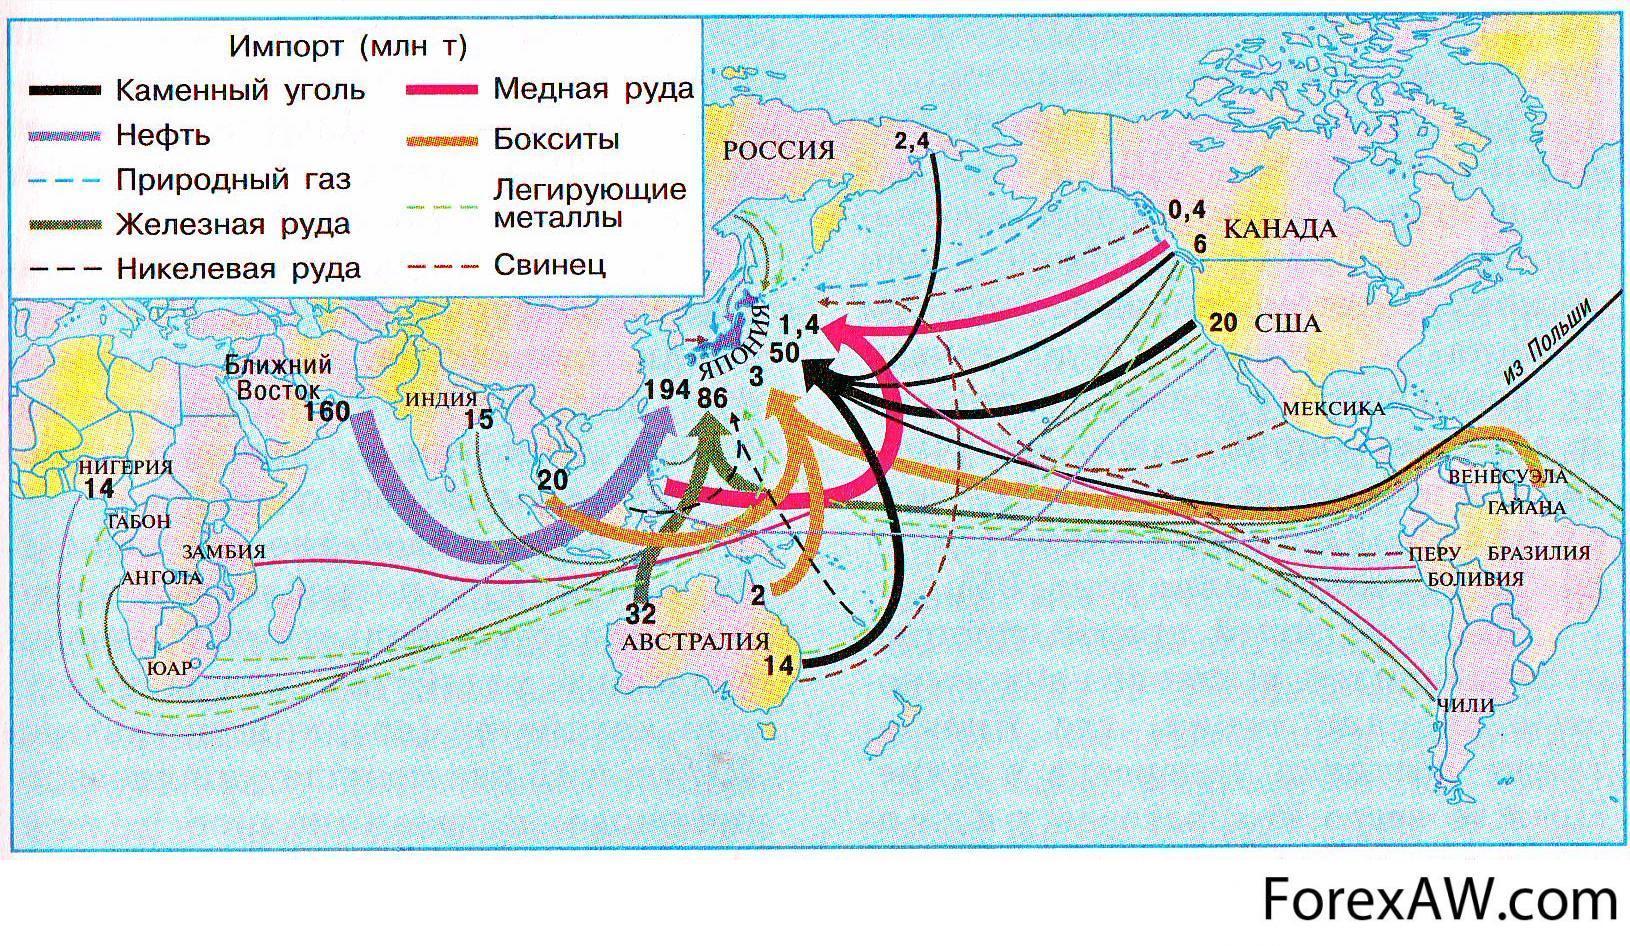 Практическая работа определение направления грузопотоков продовольствия. Импорт и экспорт Японии на карте. Импорт и экспорт Японии на карте стрелками. Импорт Японии на карте. Экспорт и импорт Японии на контурной карте стрелками.